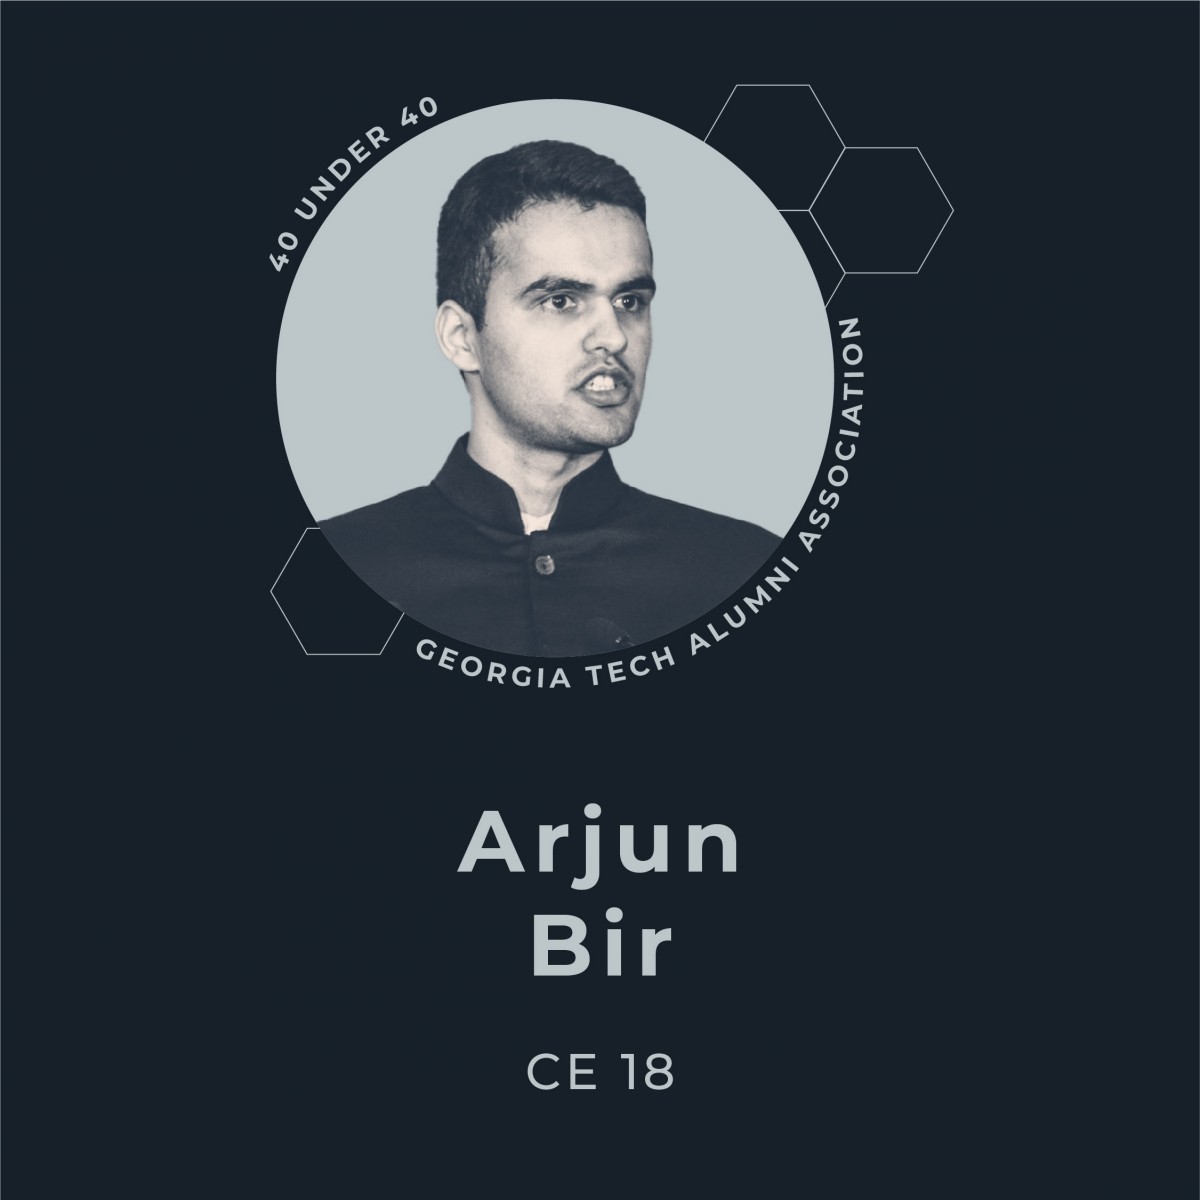 Arjun Bir, CE 18